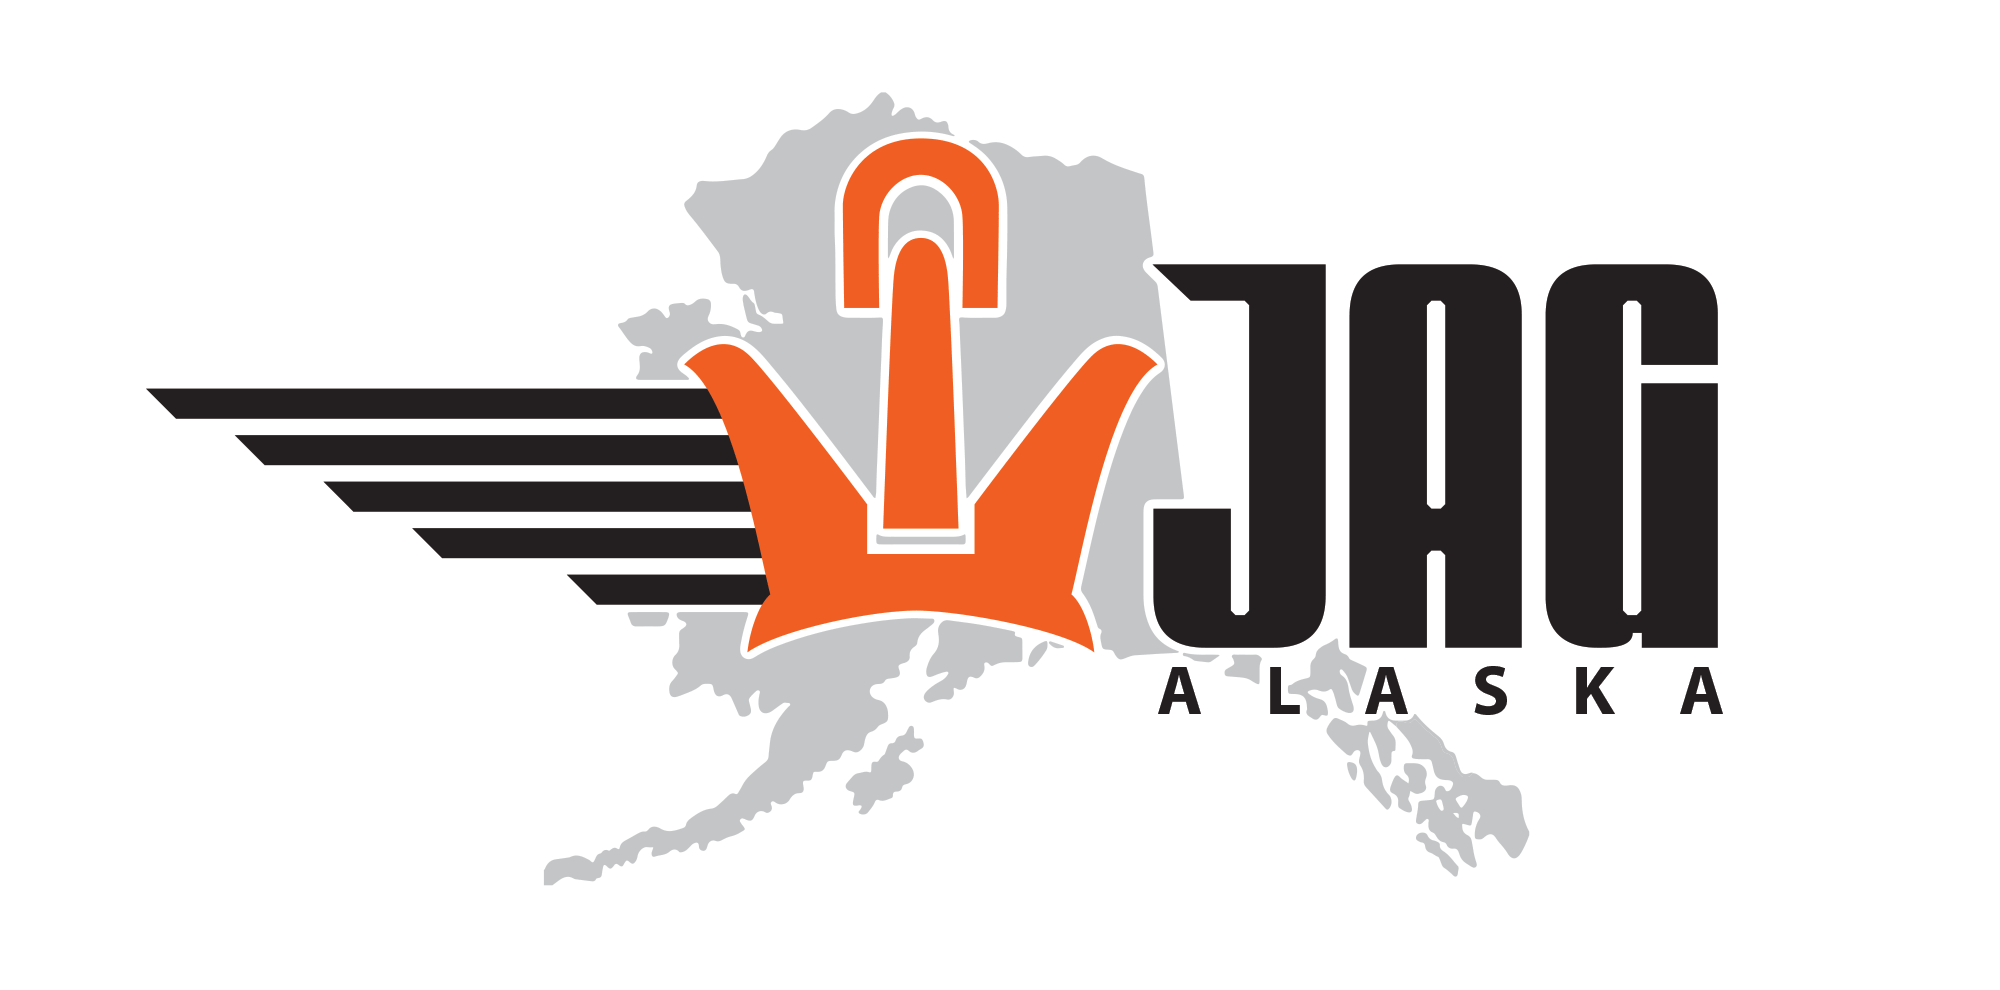 Jag Alaska logo